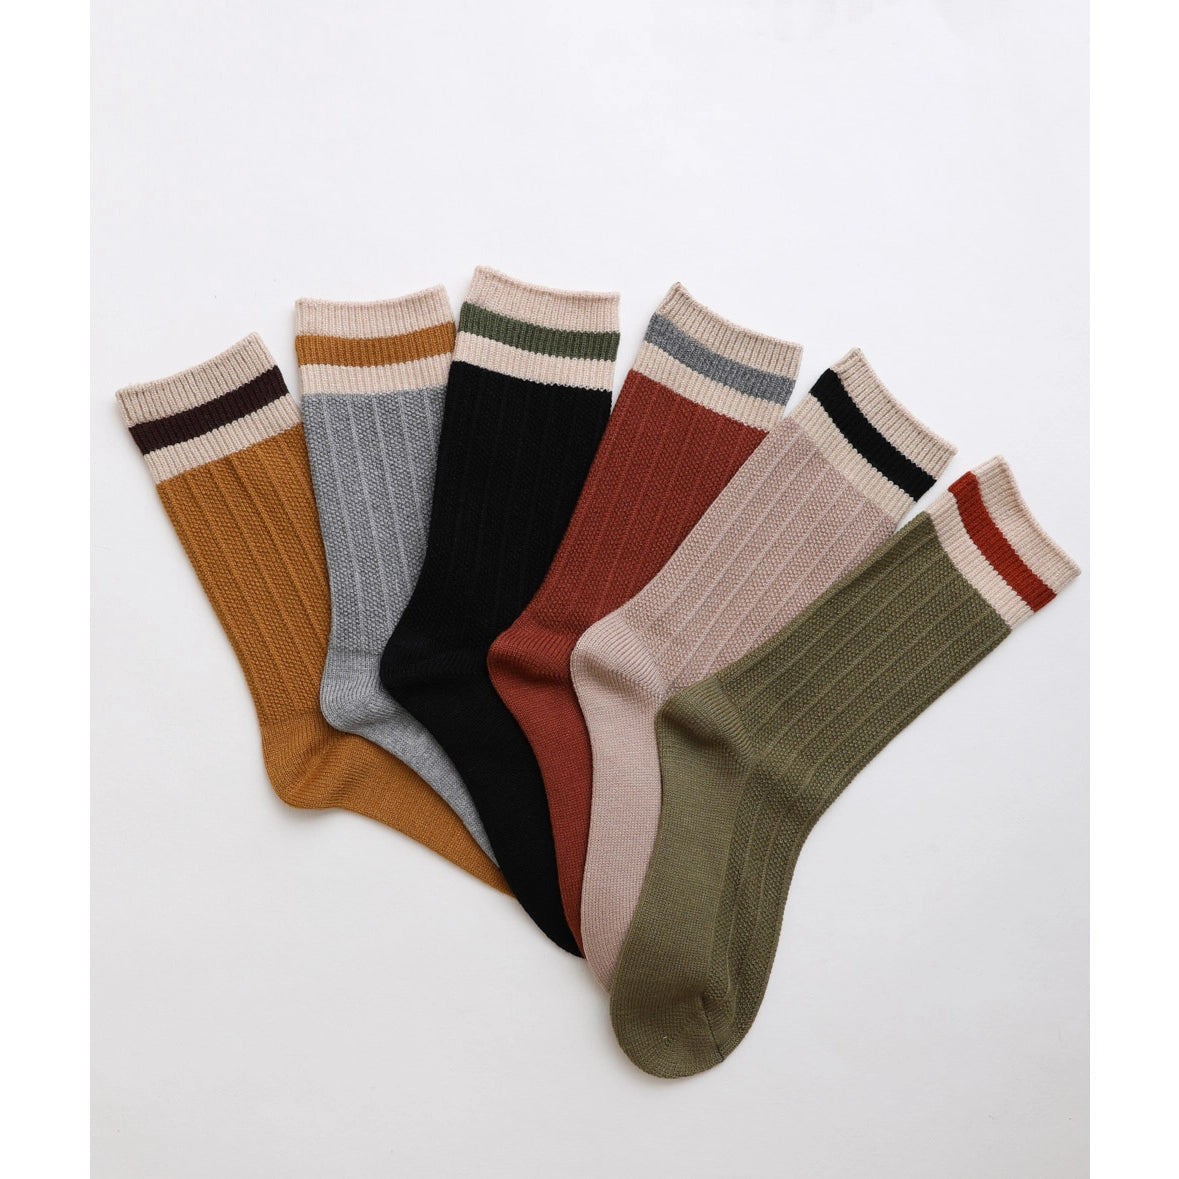 Color Block Socks - Tan